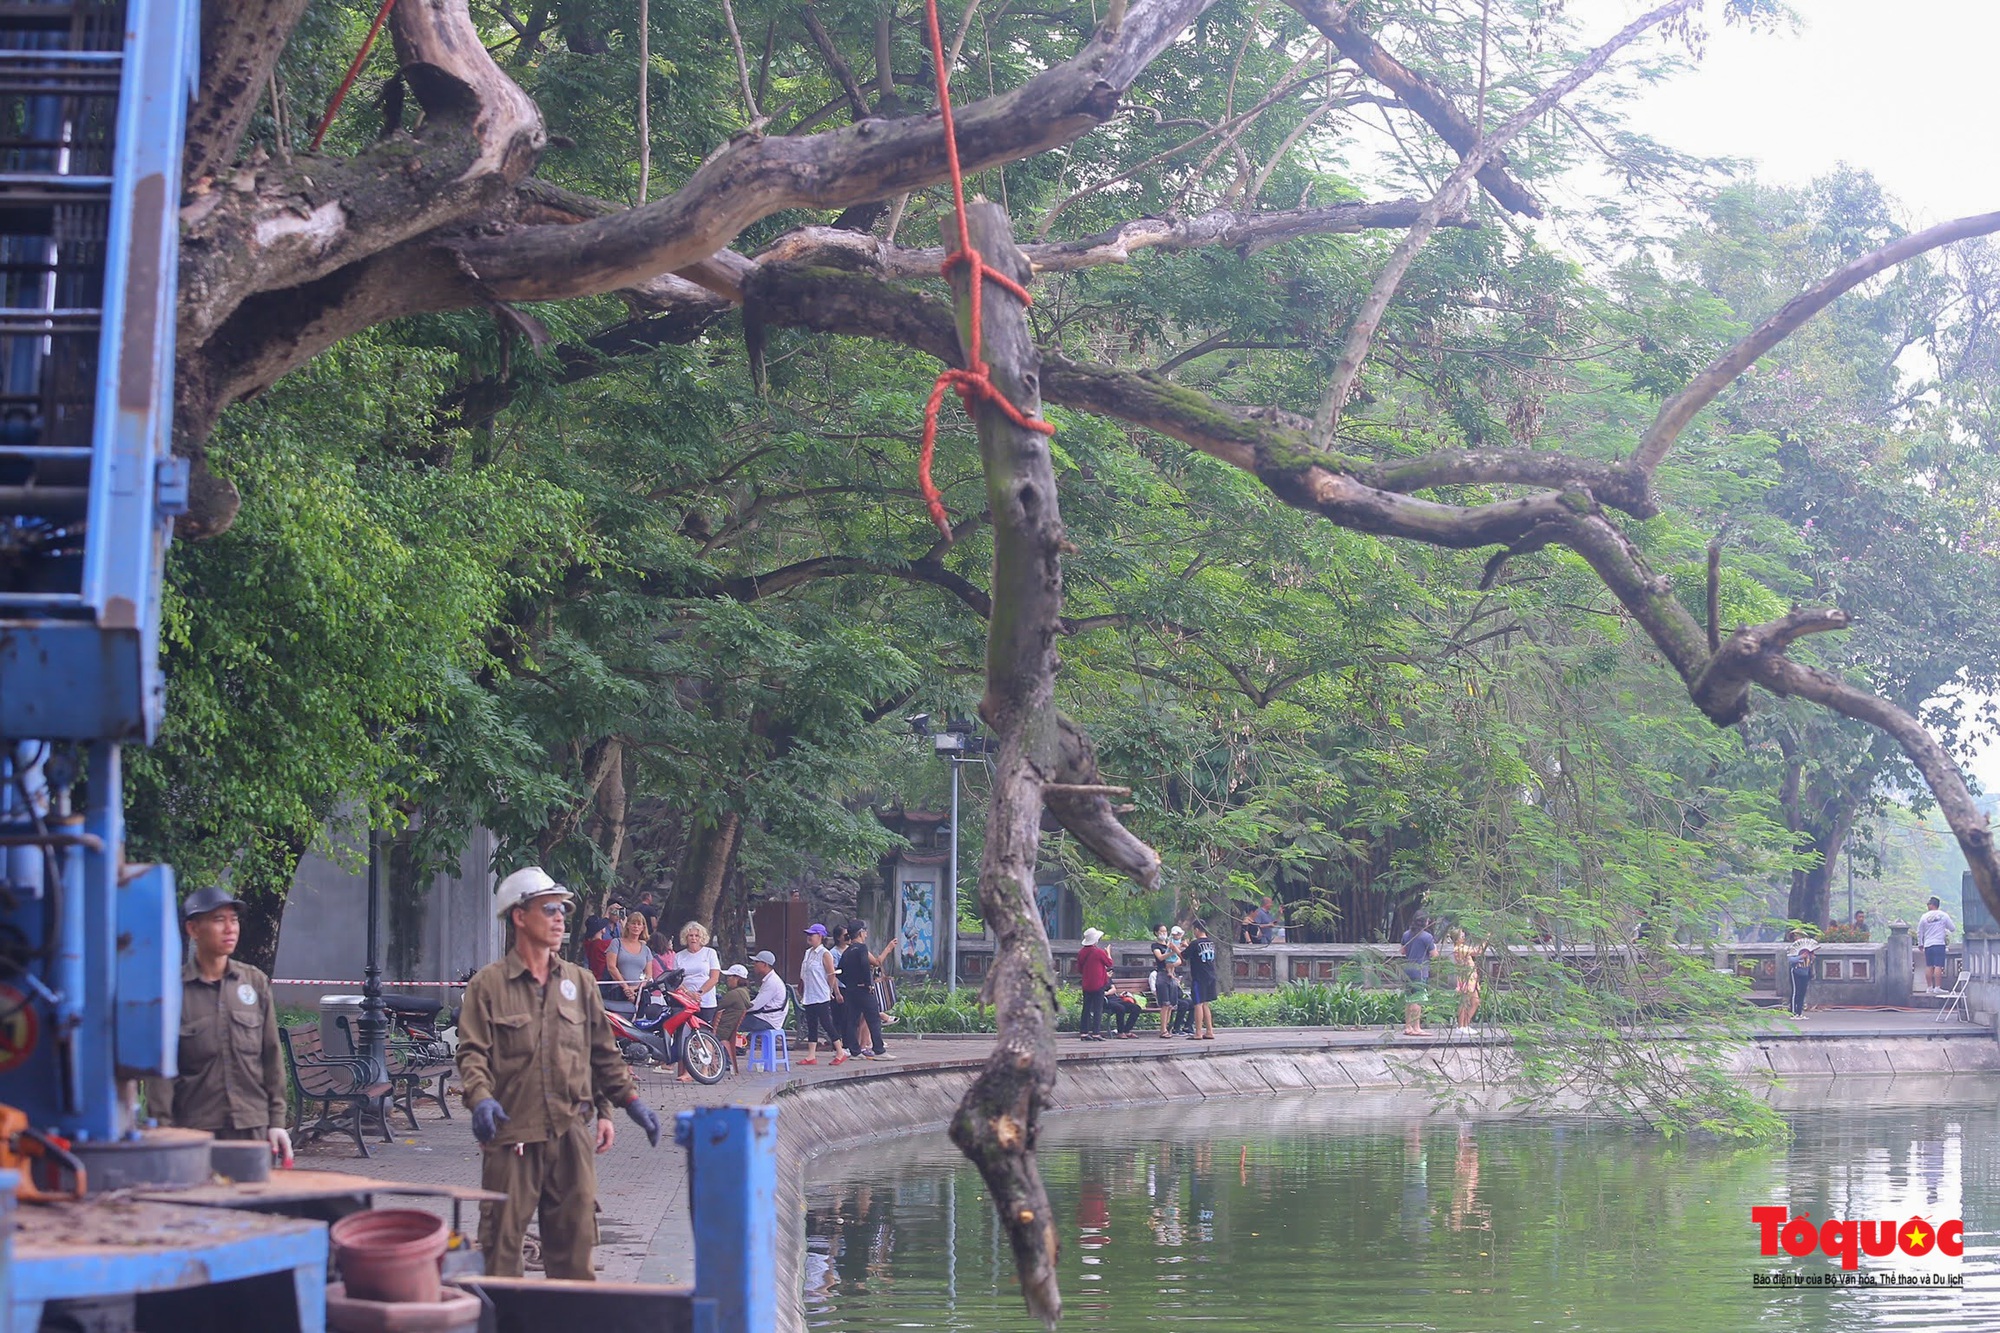 Hà Nội chặt hạ 3 cây sưa đỏ chết khô bên hồ Hoàn Kiếm - Ảnh 14.